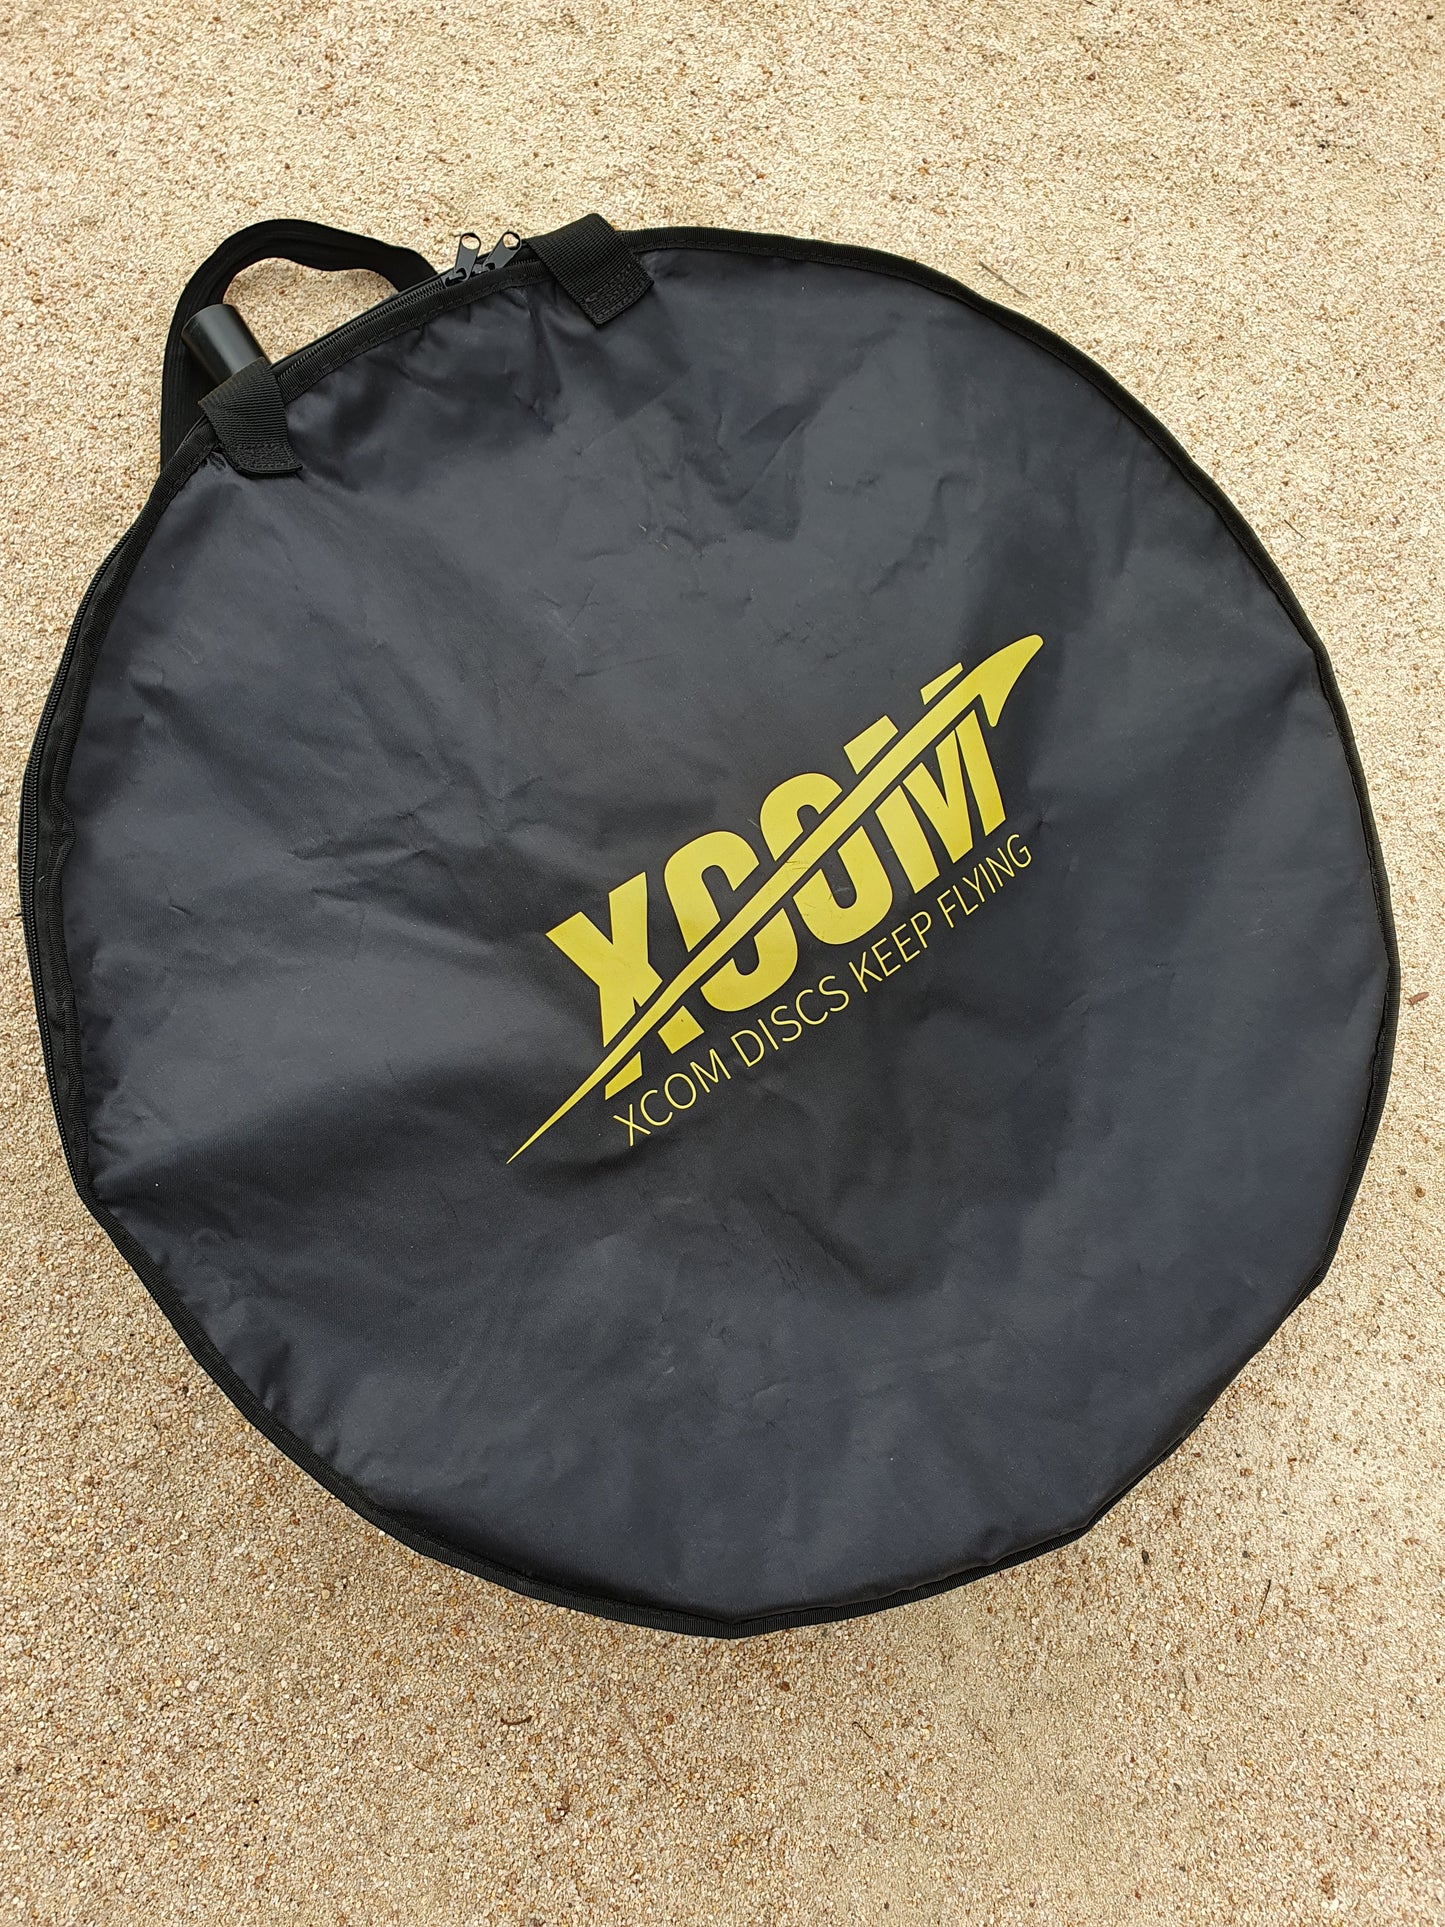 XCOM Buddy basket + carry bag